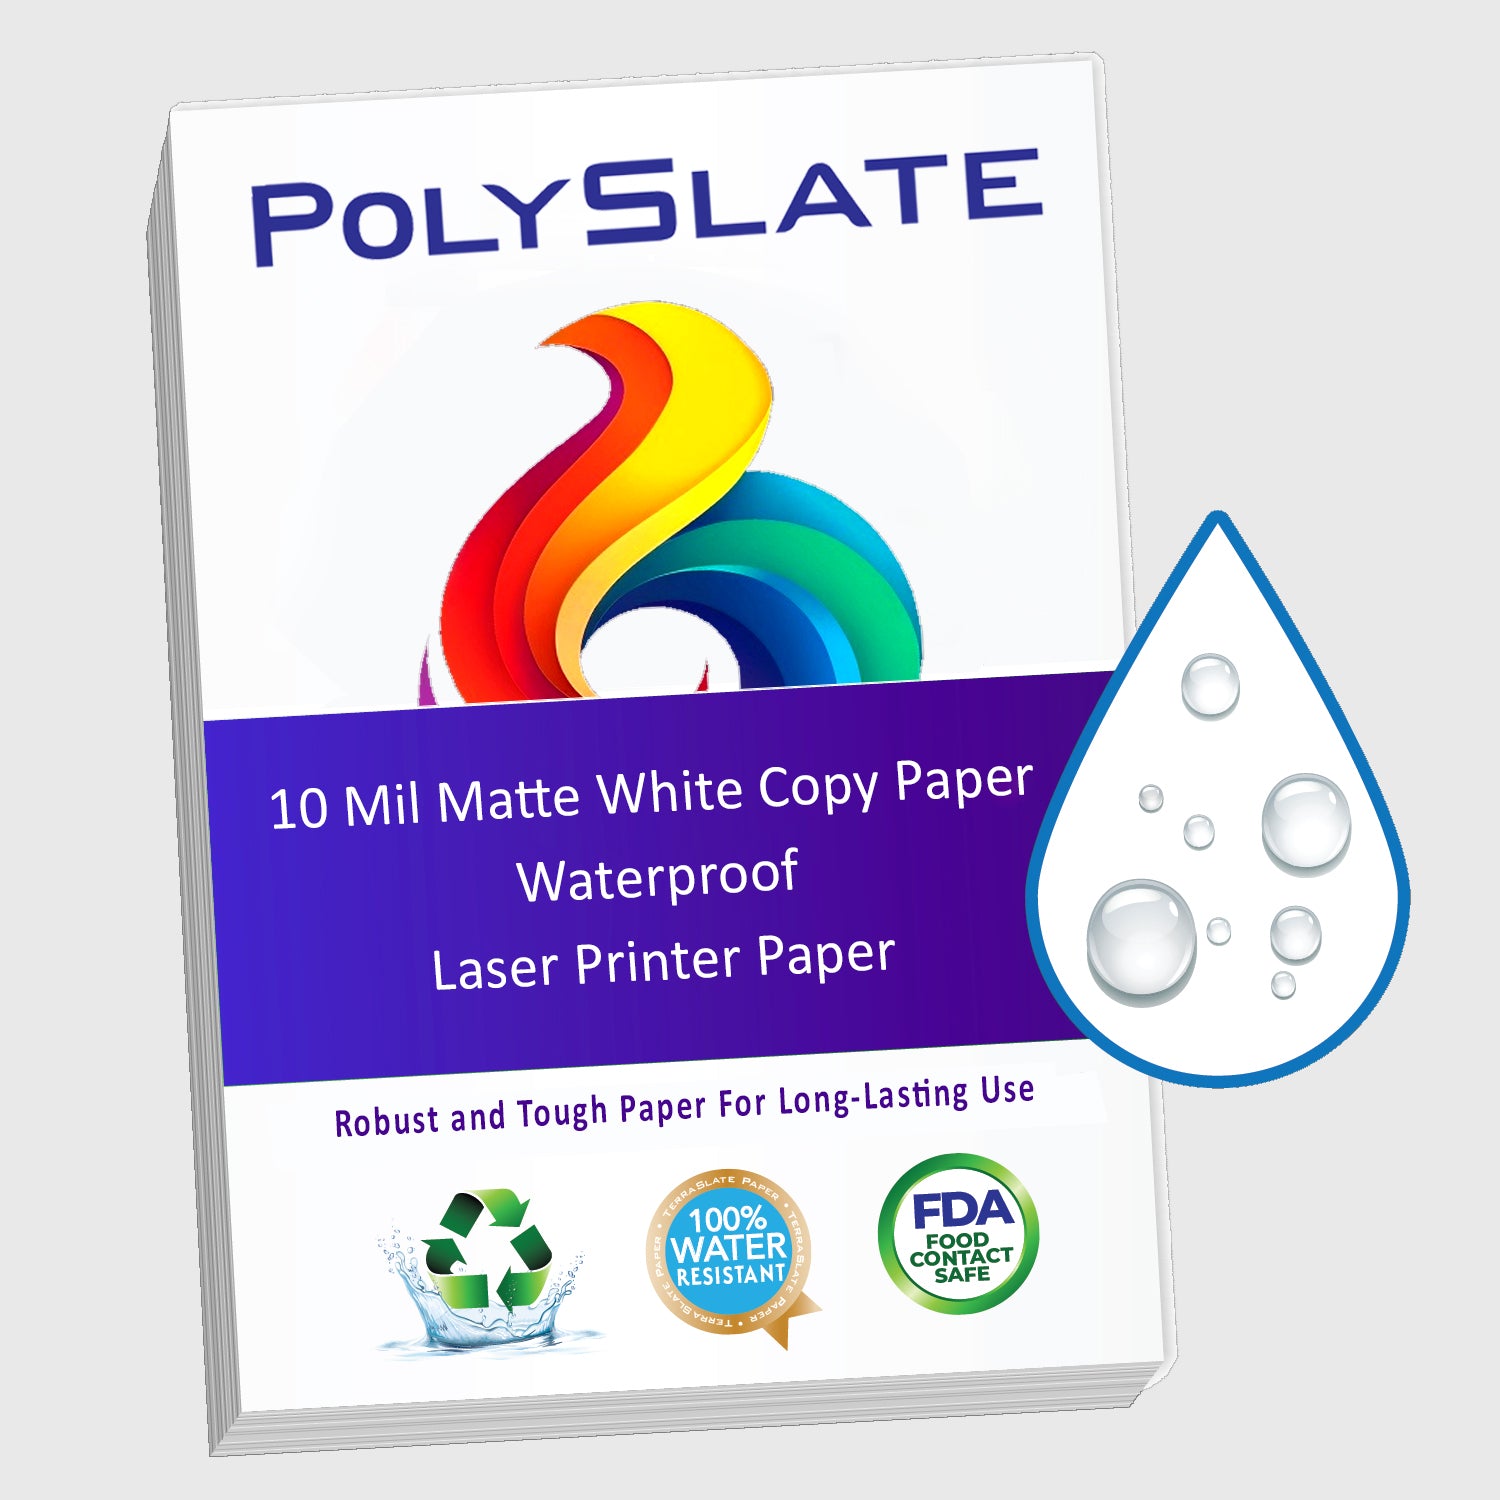 PolySlate Value Waterproof Paper